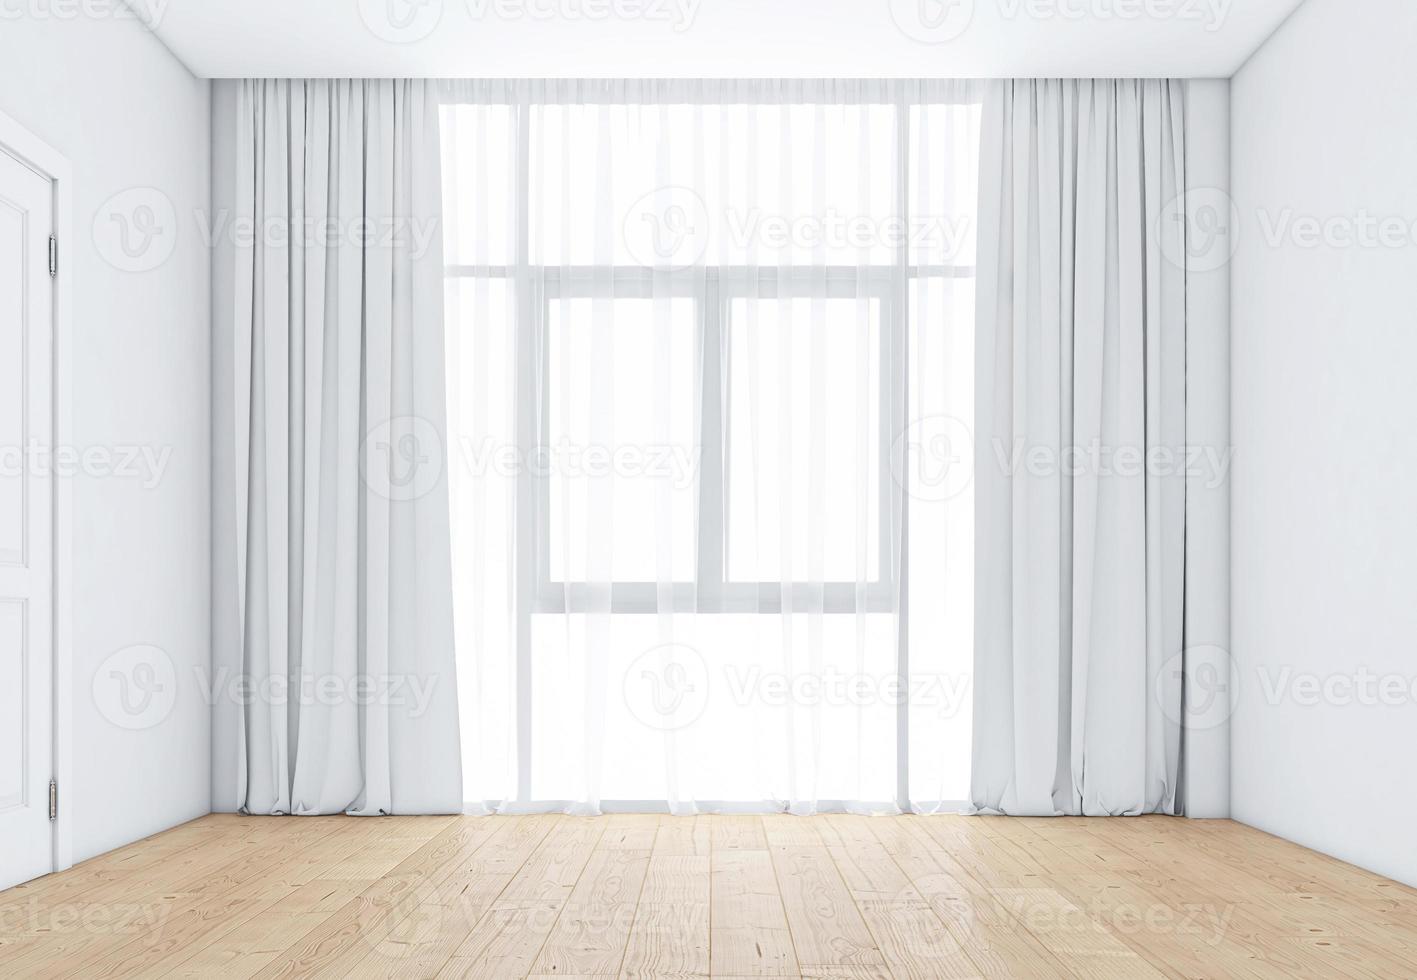 habitación vacía con ventanas y cortinas blancas, suelo de madera. representación 3d foto